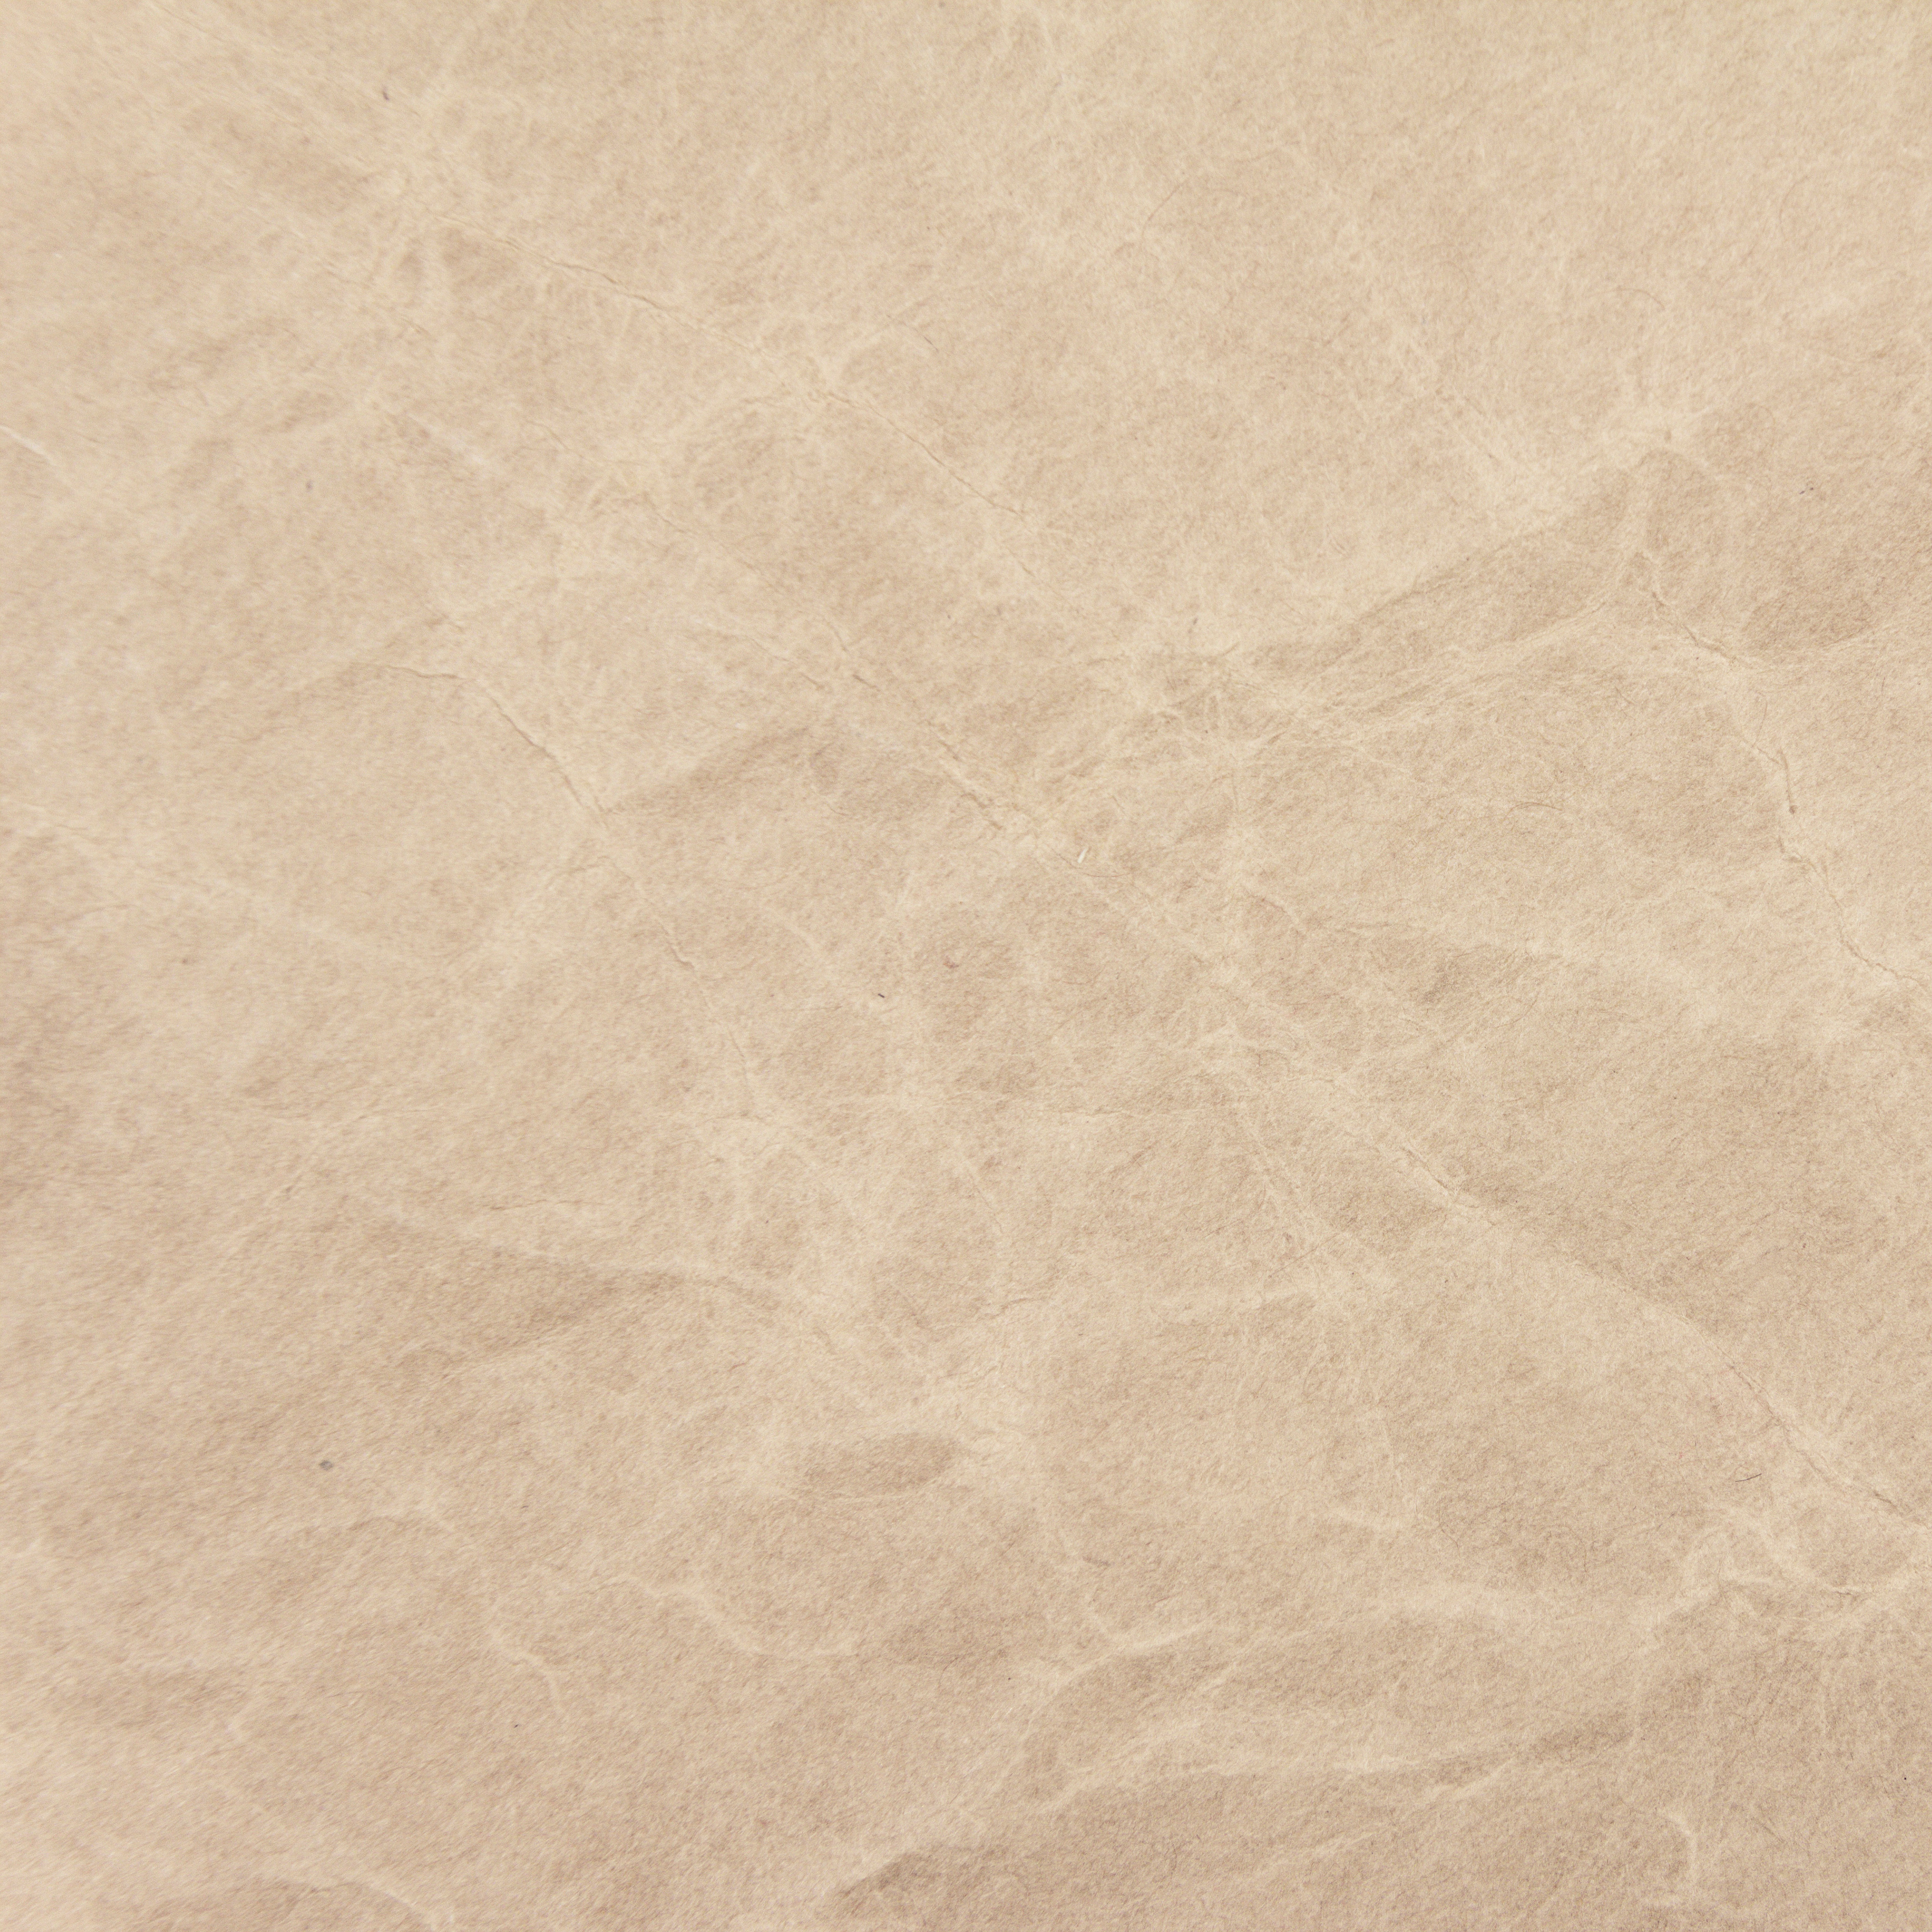 Grunge paper texture photo